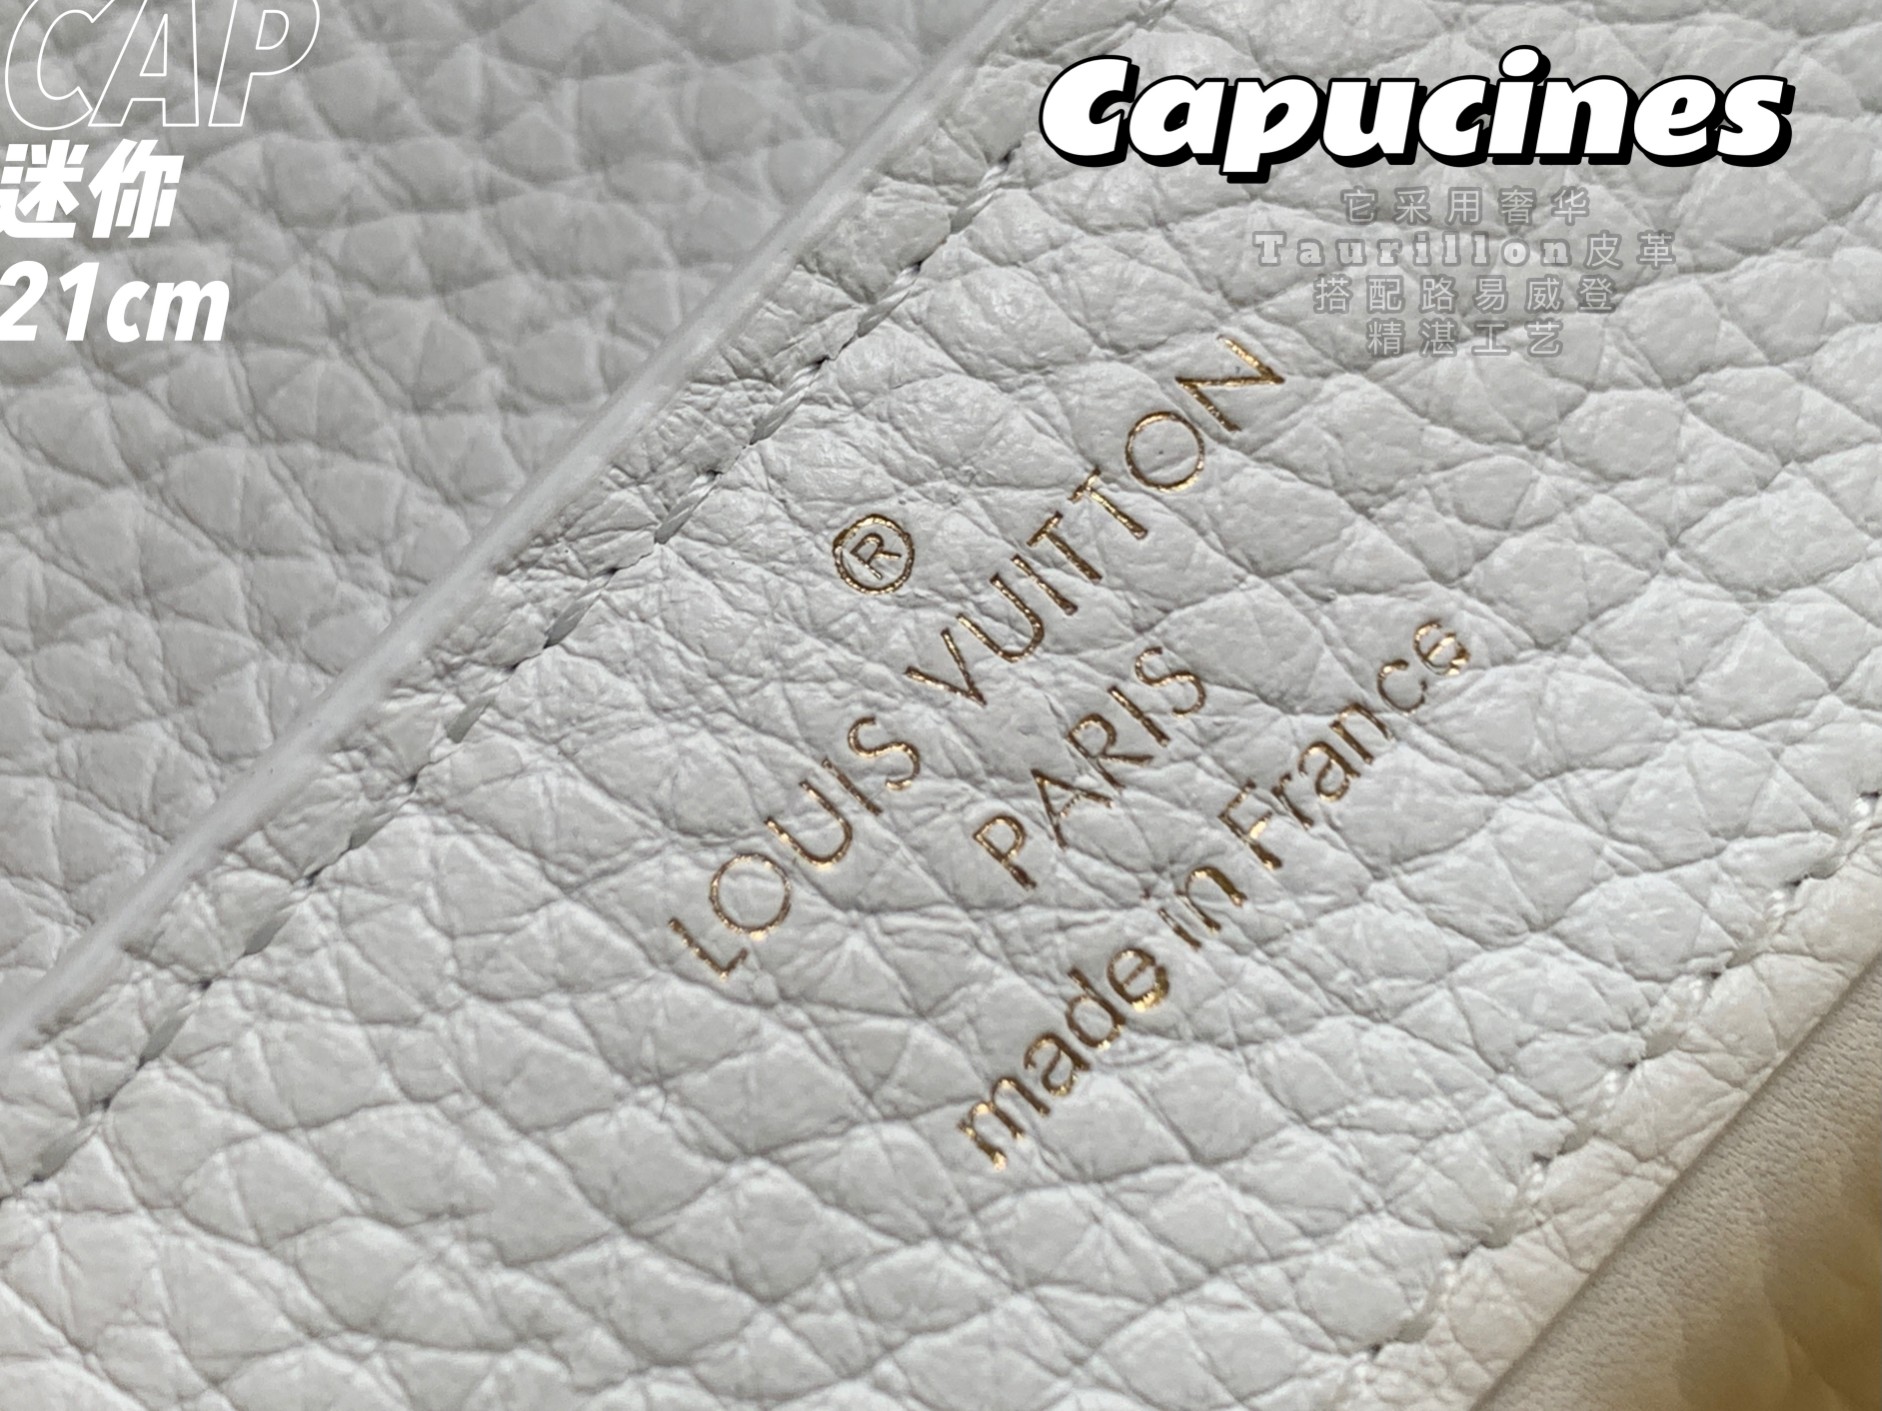 Capucines  M95509 21x14x8 cm gf (71)